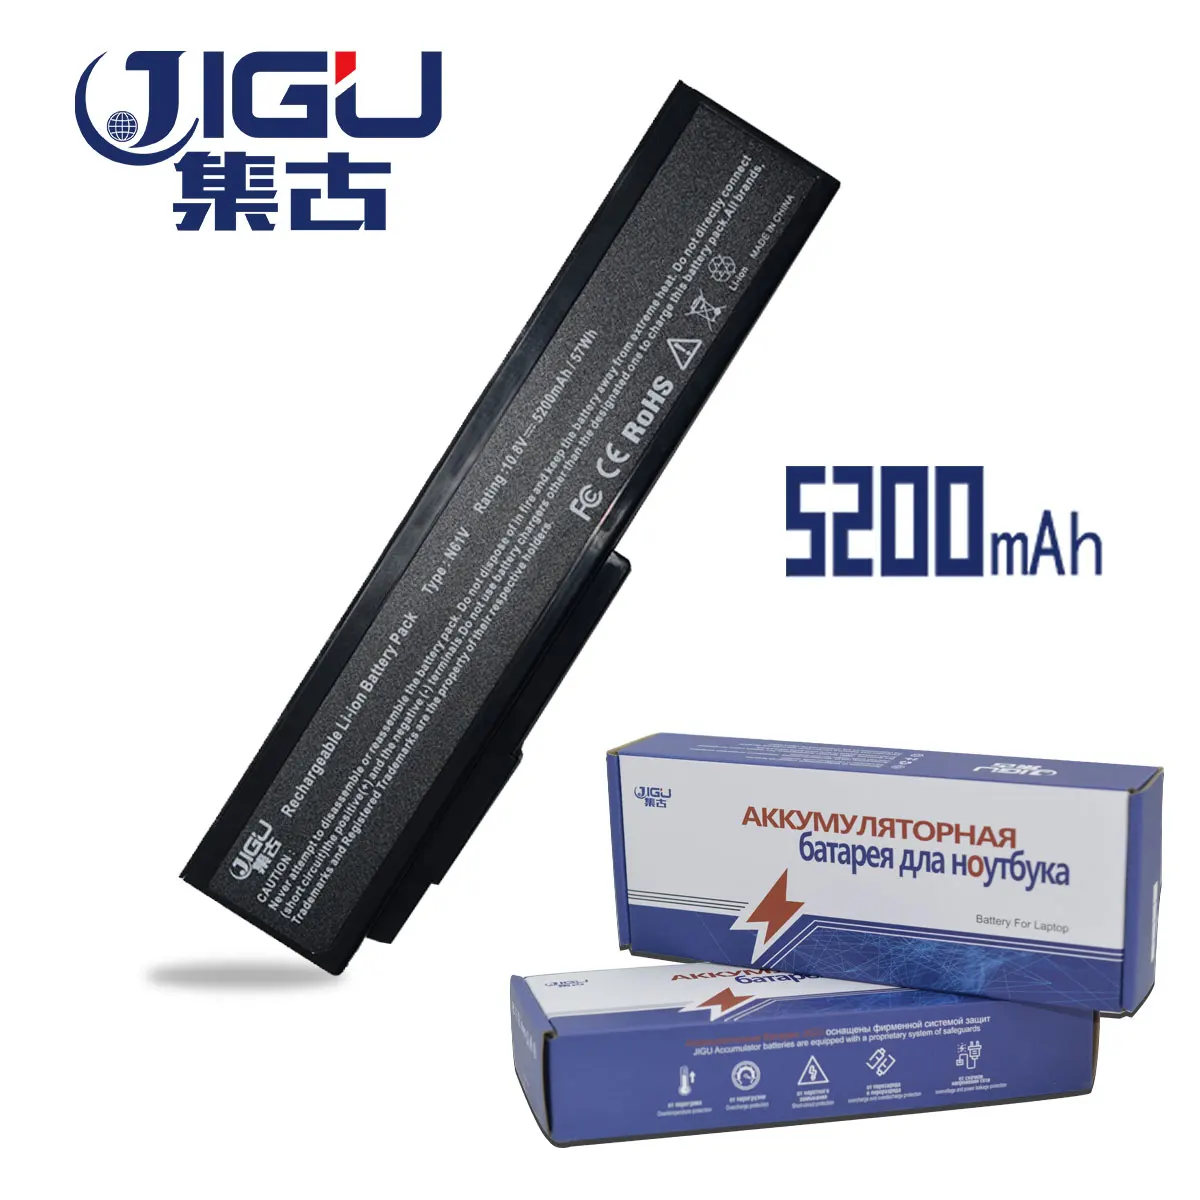 JIGU Lptop Battery For ASUS N61J N61JA N61JQ N61JV N61V A32-N61 N61VG N61VN N61W N53S A33-M50 M50s A32-X64 X57 X57Q